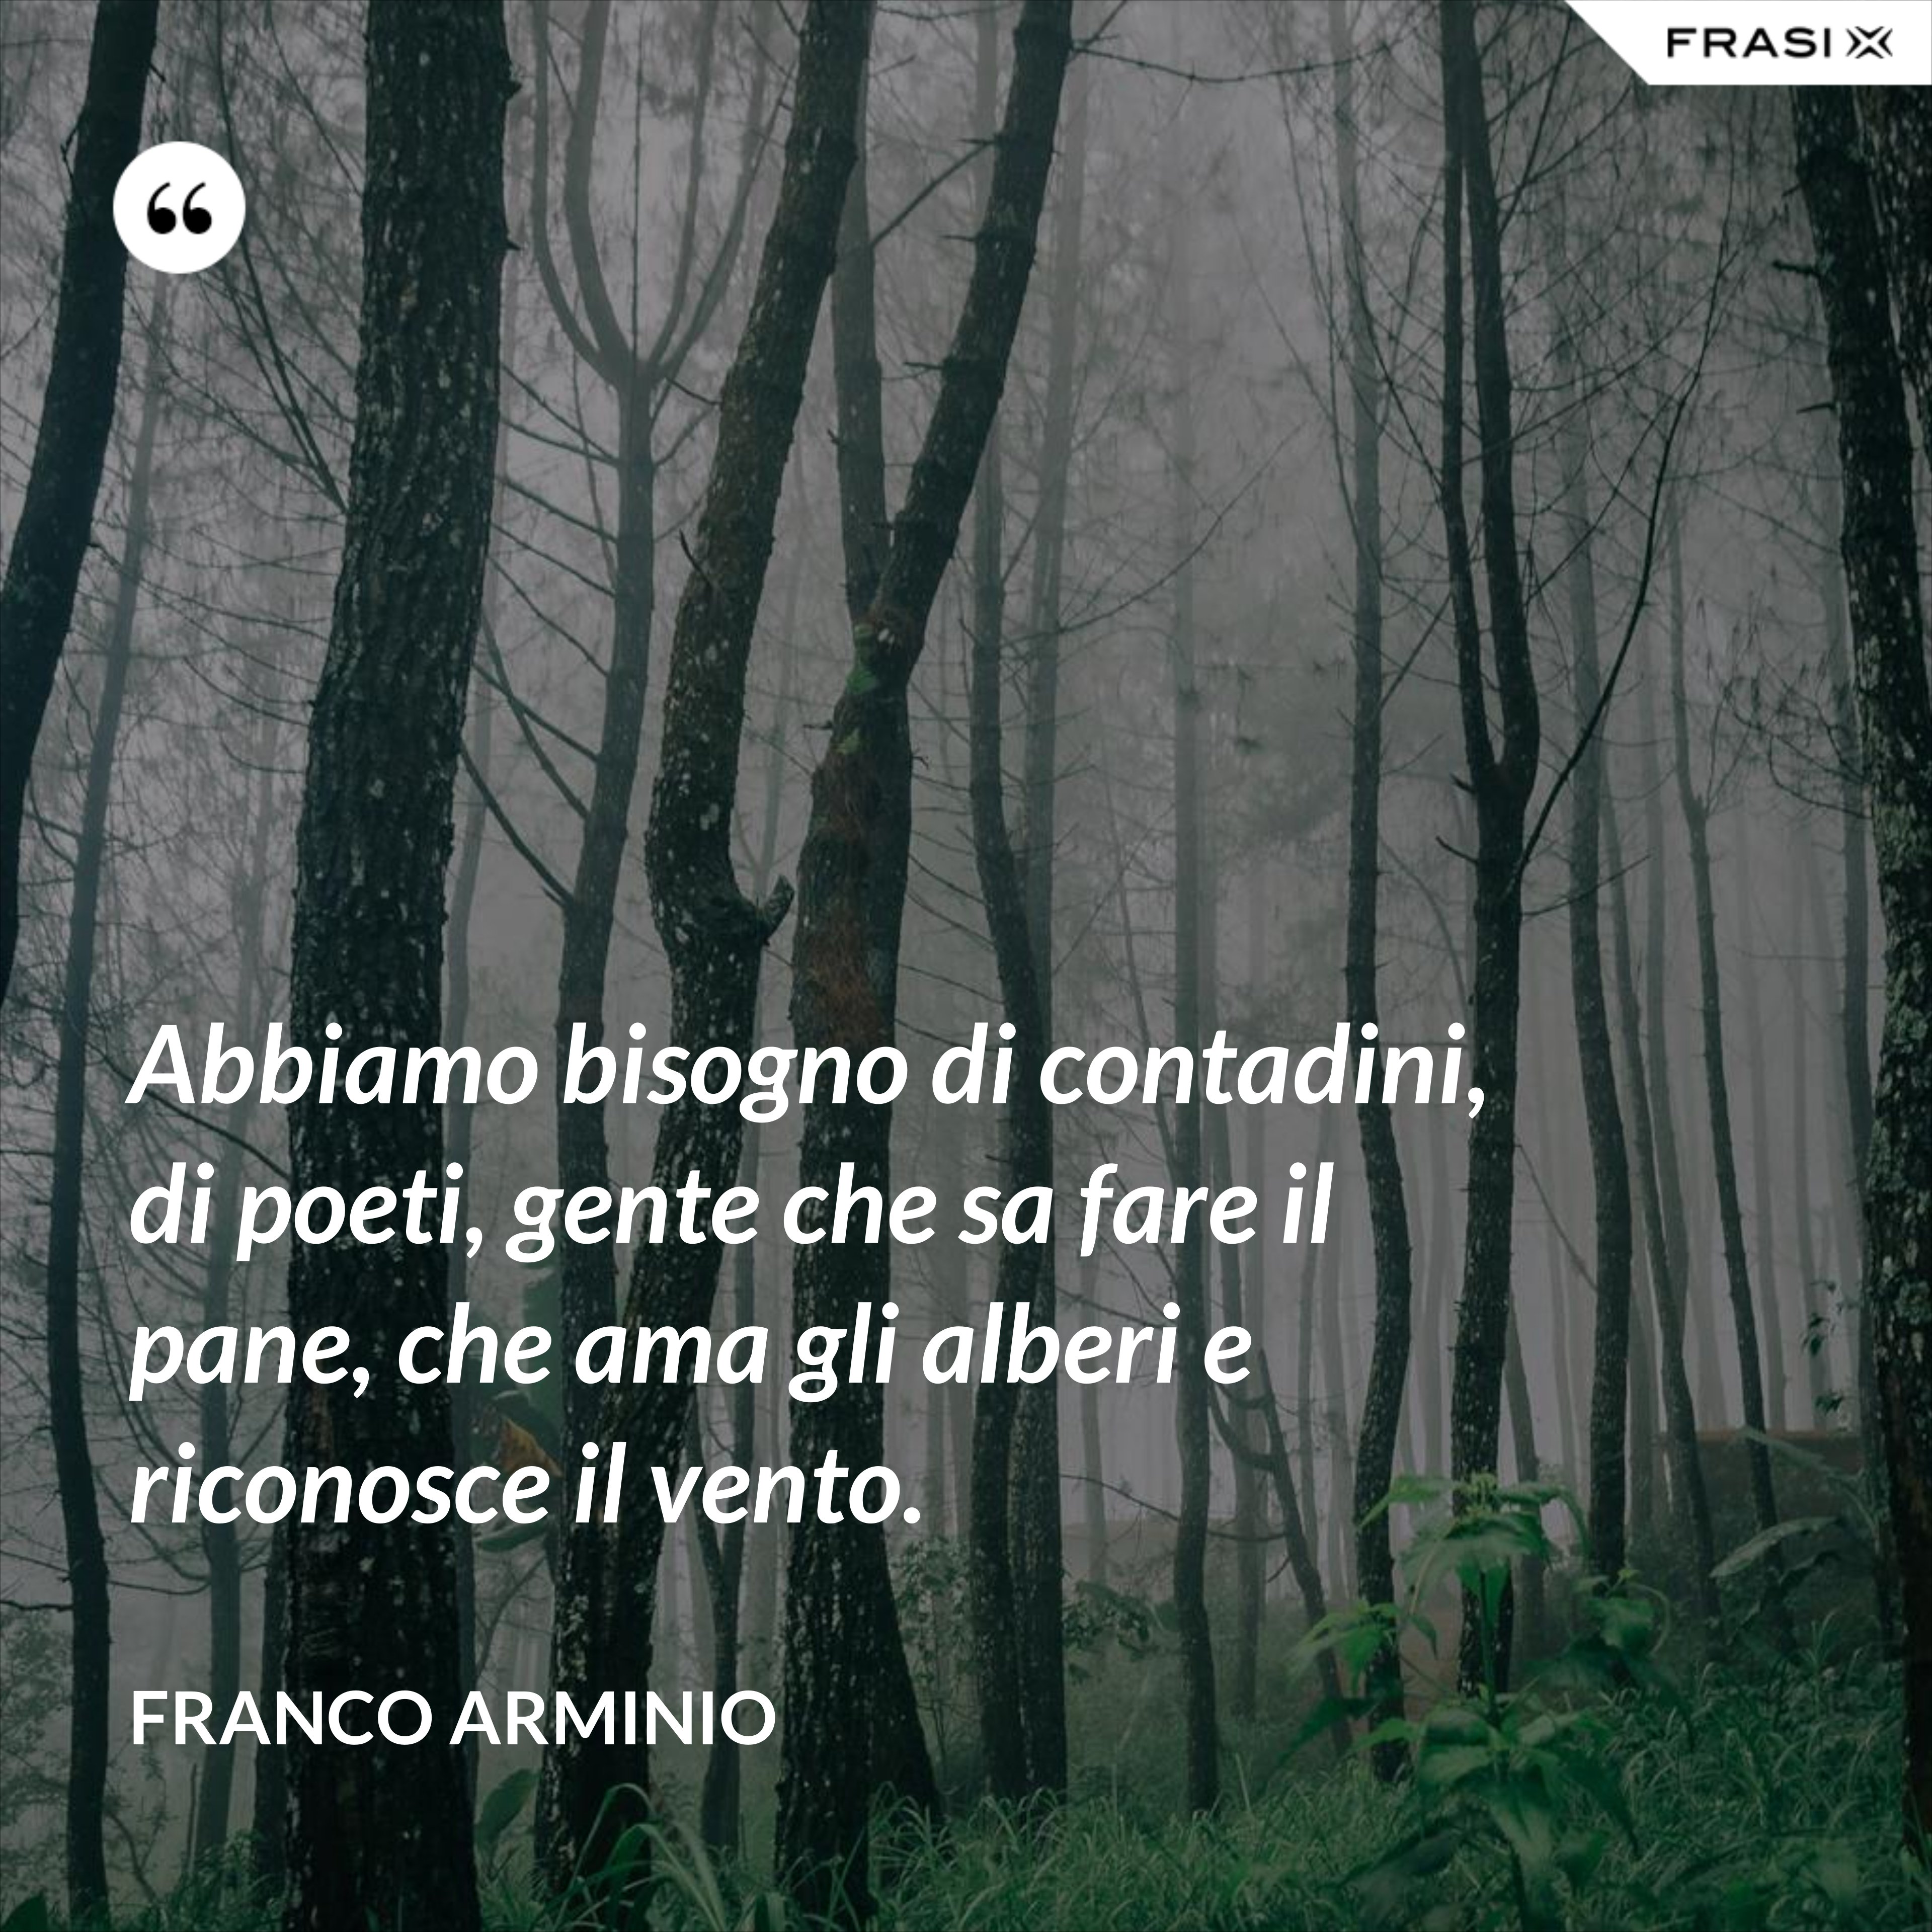 Abbiamo bisogno di contadini, di poeti, gente che sa fare il pane, che ama gli alberi e riconosce il vento. - Franco Arminio